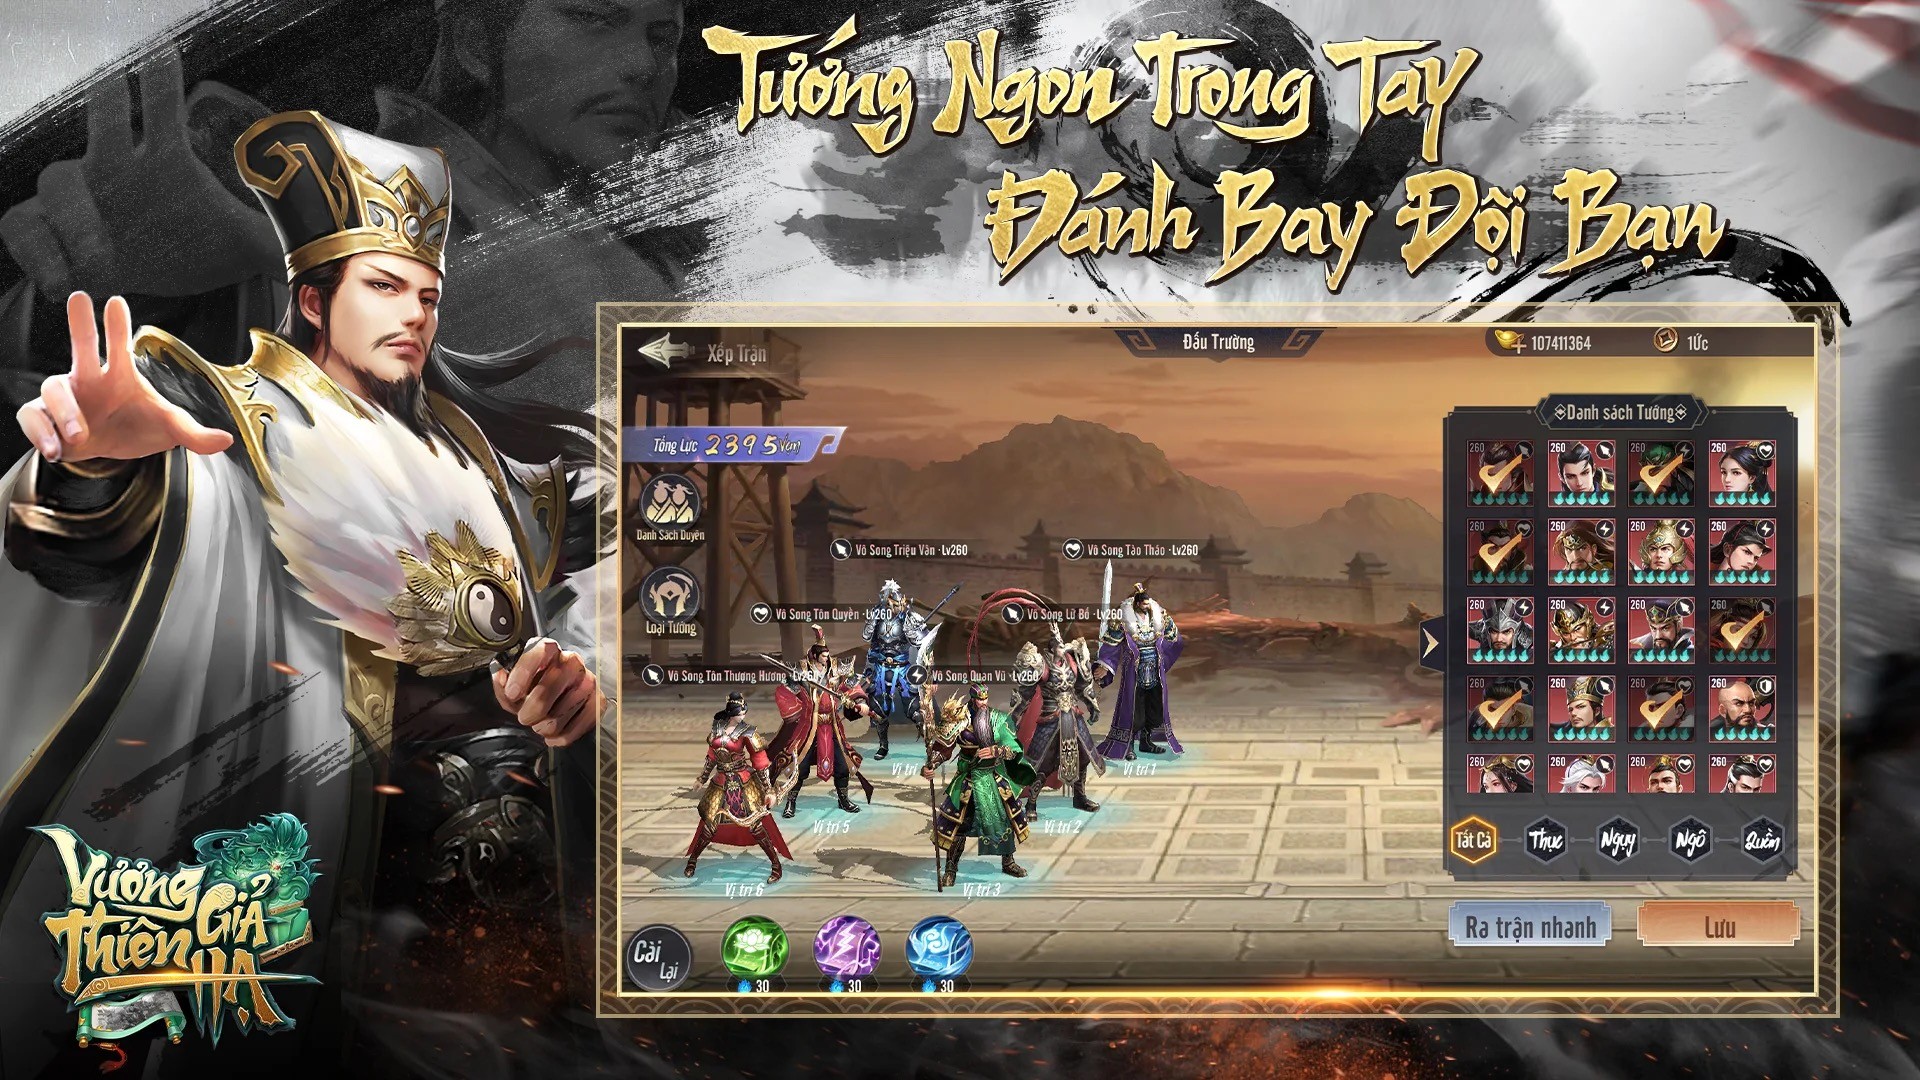 Vương Giả Thiên Hạ: Game đấu tưởng rảnh tay đến từ Migame